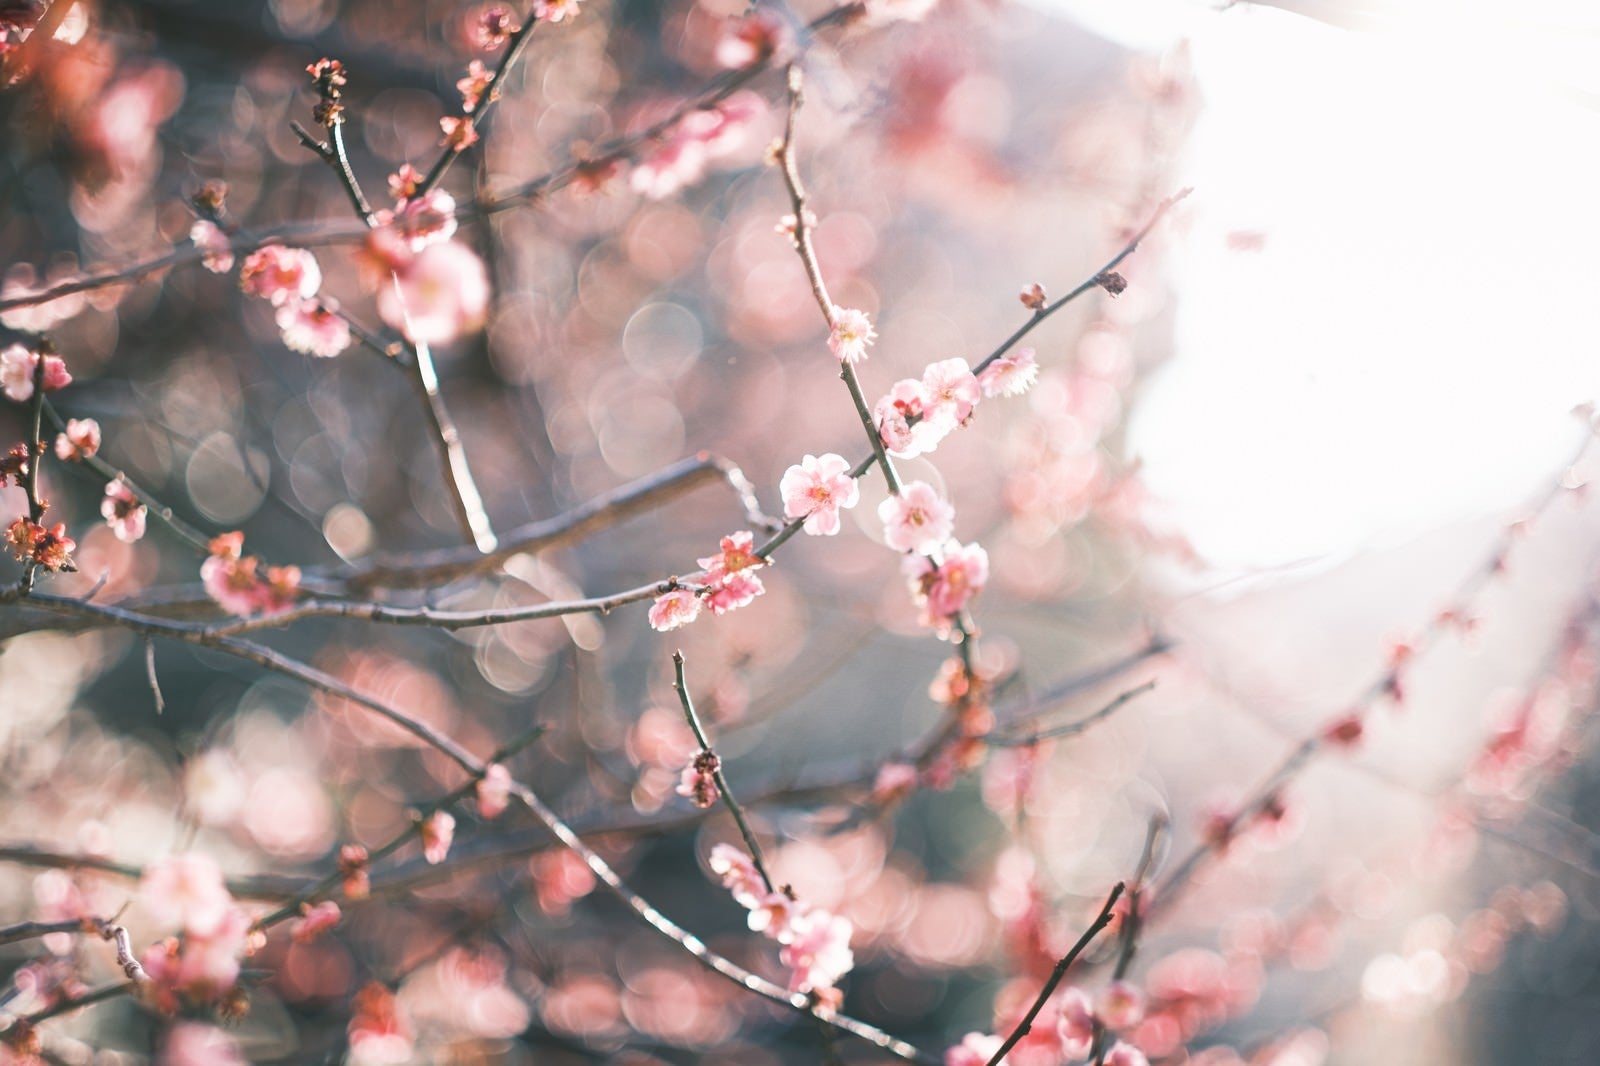 「降り注ぐ陽の光と梅の花」の写真